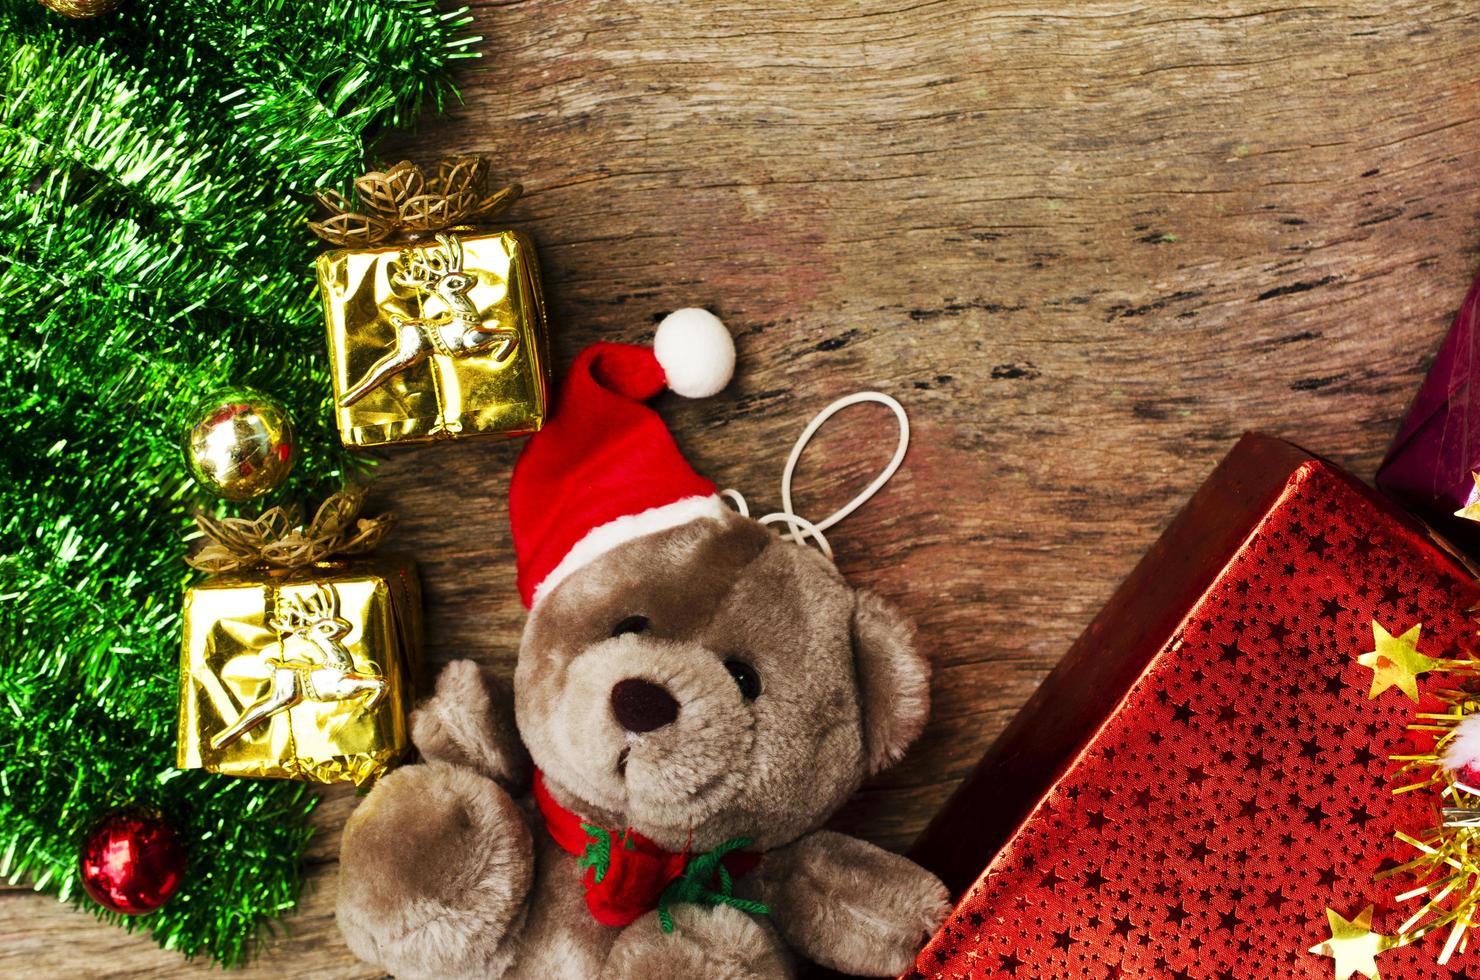 Oso de peluche con decoración navideña sobre fondos de madera arriba foto